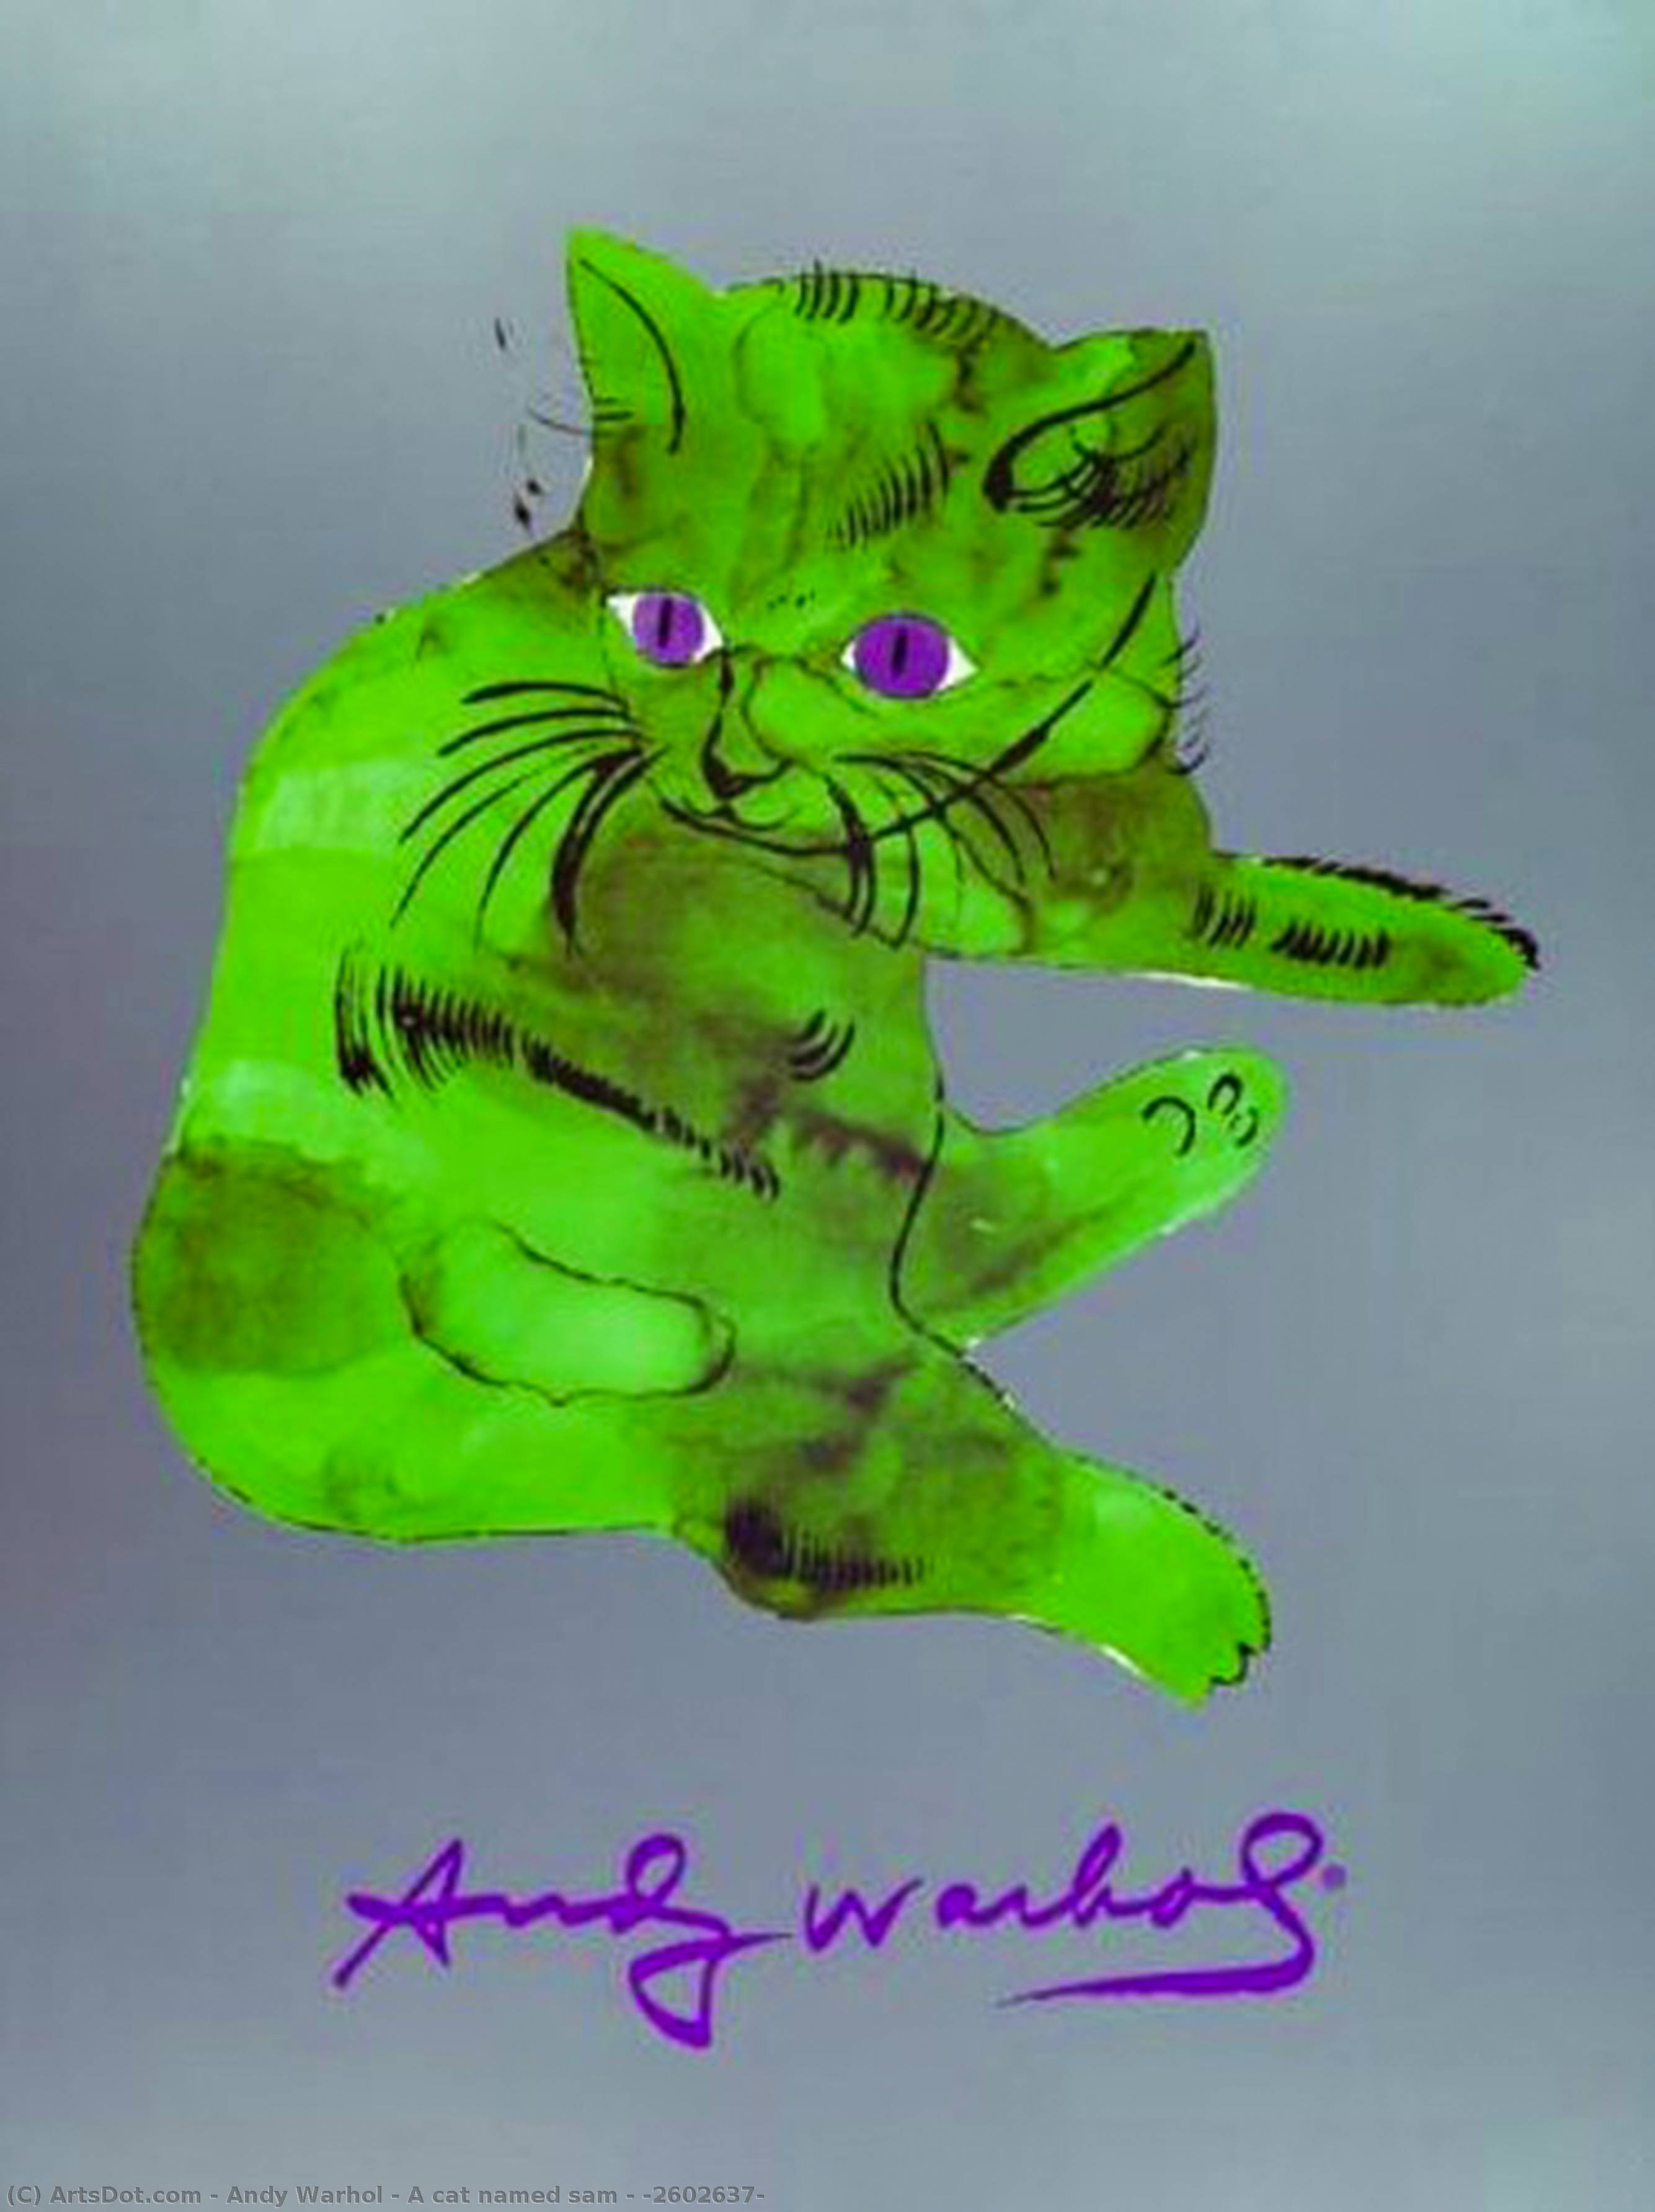 Wikioo.org – L'Encyclopédie des Beaux Arts - Peinture, Oeuvre de Andy Warhol - Un chat nommé sam - ( 2602637 )